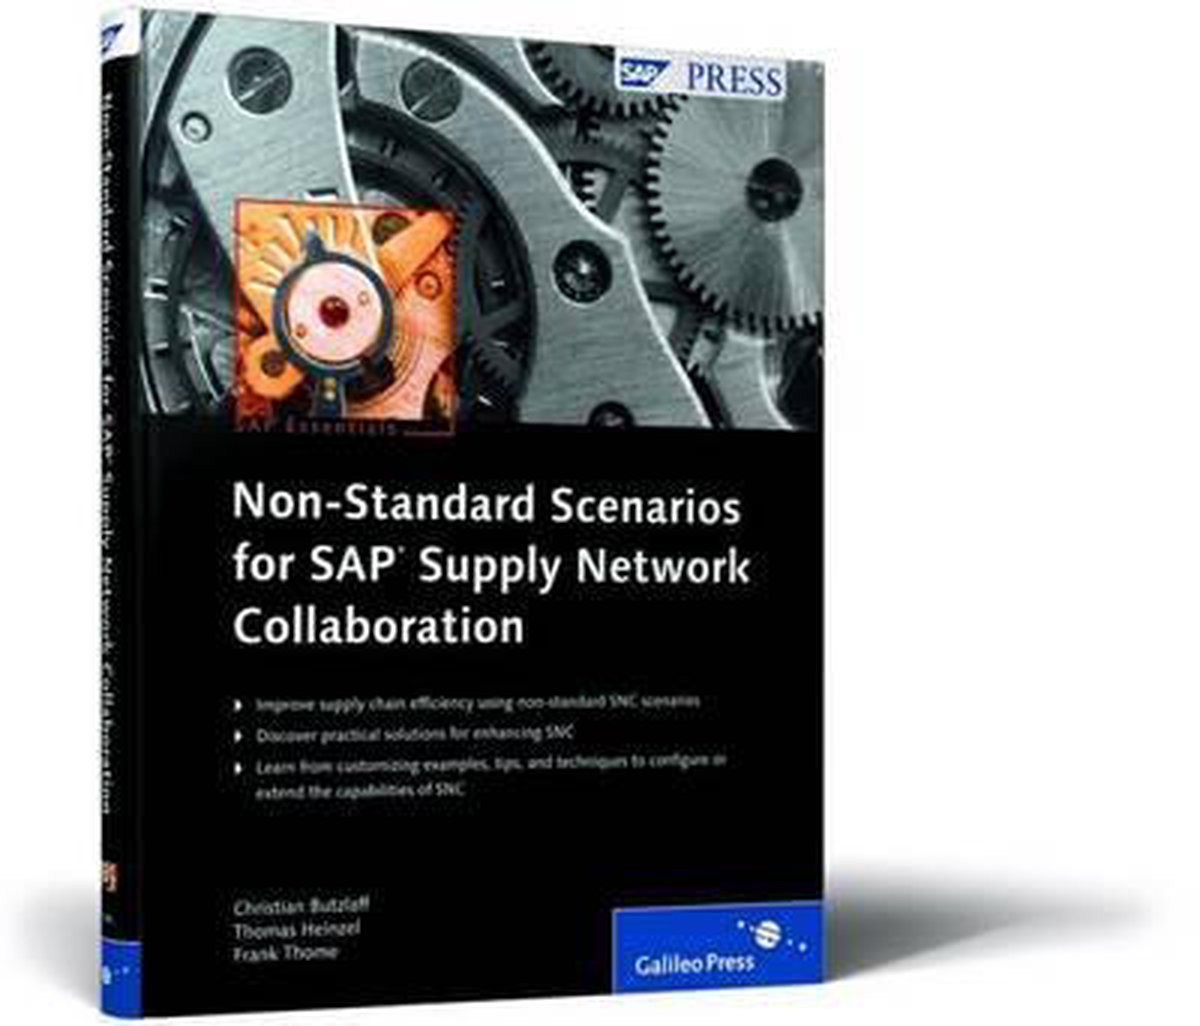 Non-Standard Scenarios for SAP Supply Network Collaboration